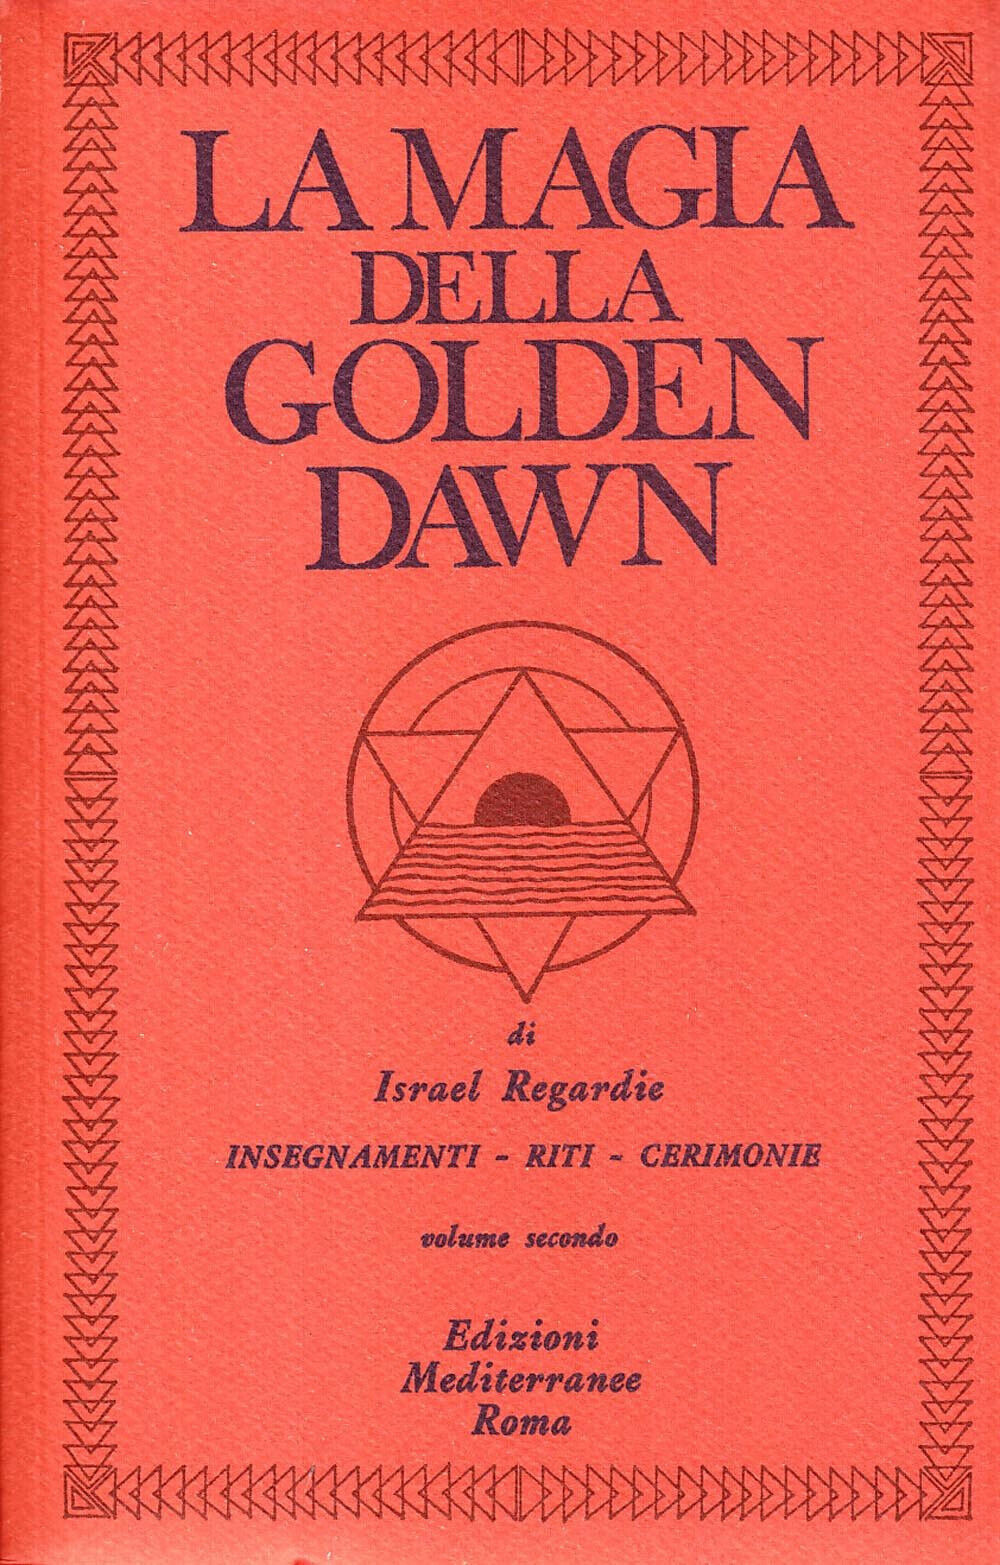 La magia della Golden Dawn vol.2 - Israel Regardie - Mediterranee, 1983